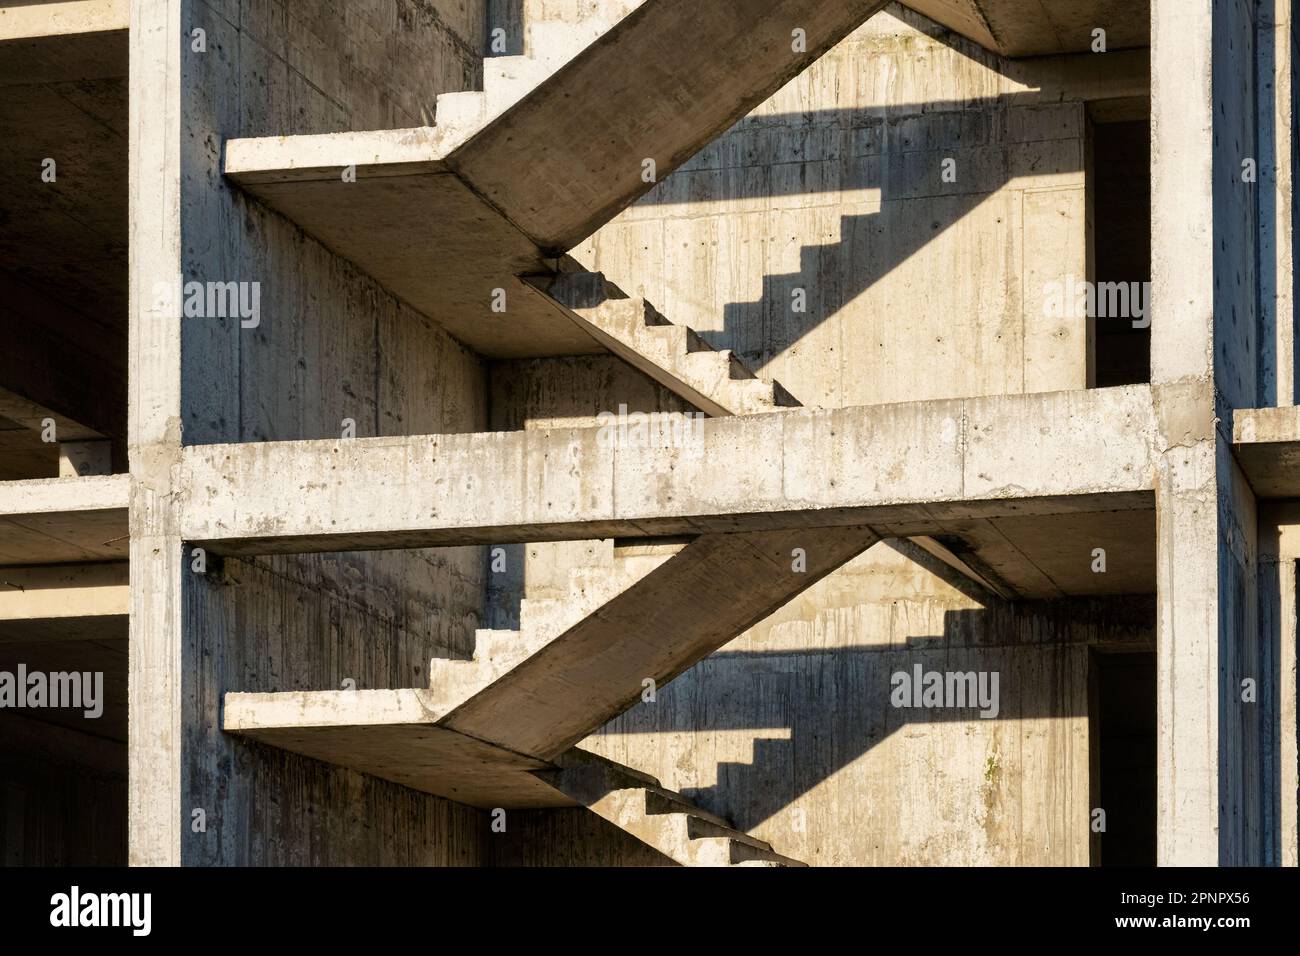 Schema di architettura geometrica minimo astratto. Scale in cemento in cantiere. Costruzione di una casa. Contesto industriale Foto Stock